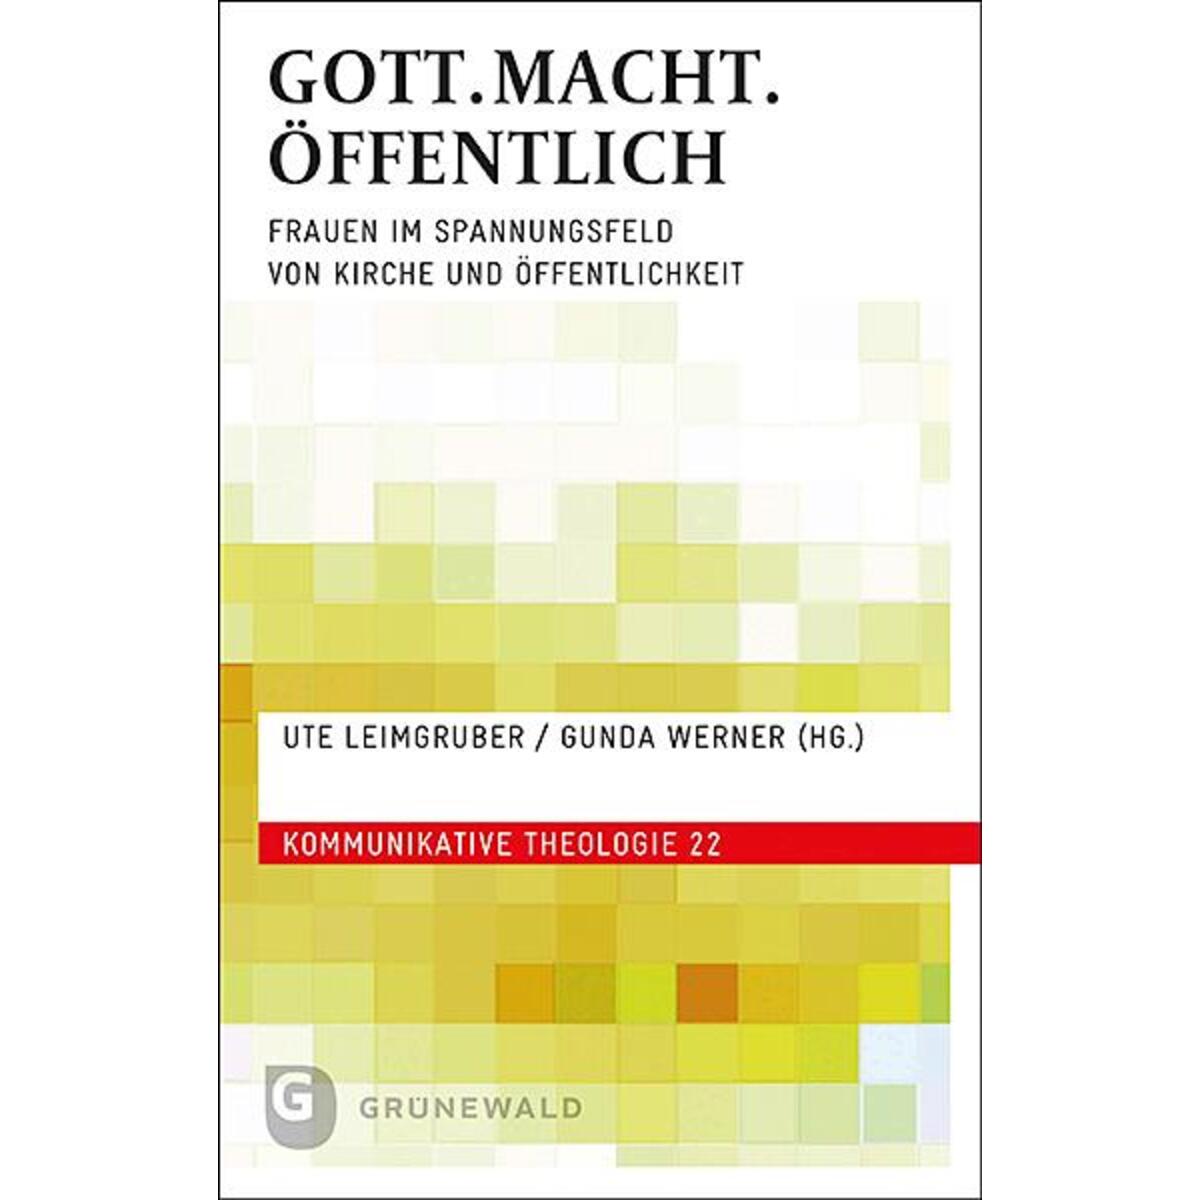 GOTT.MACHT.ÖFFENTLICH von Matthias-Grünewald-Verlag